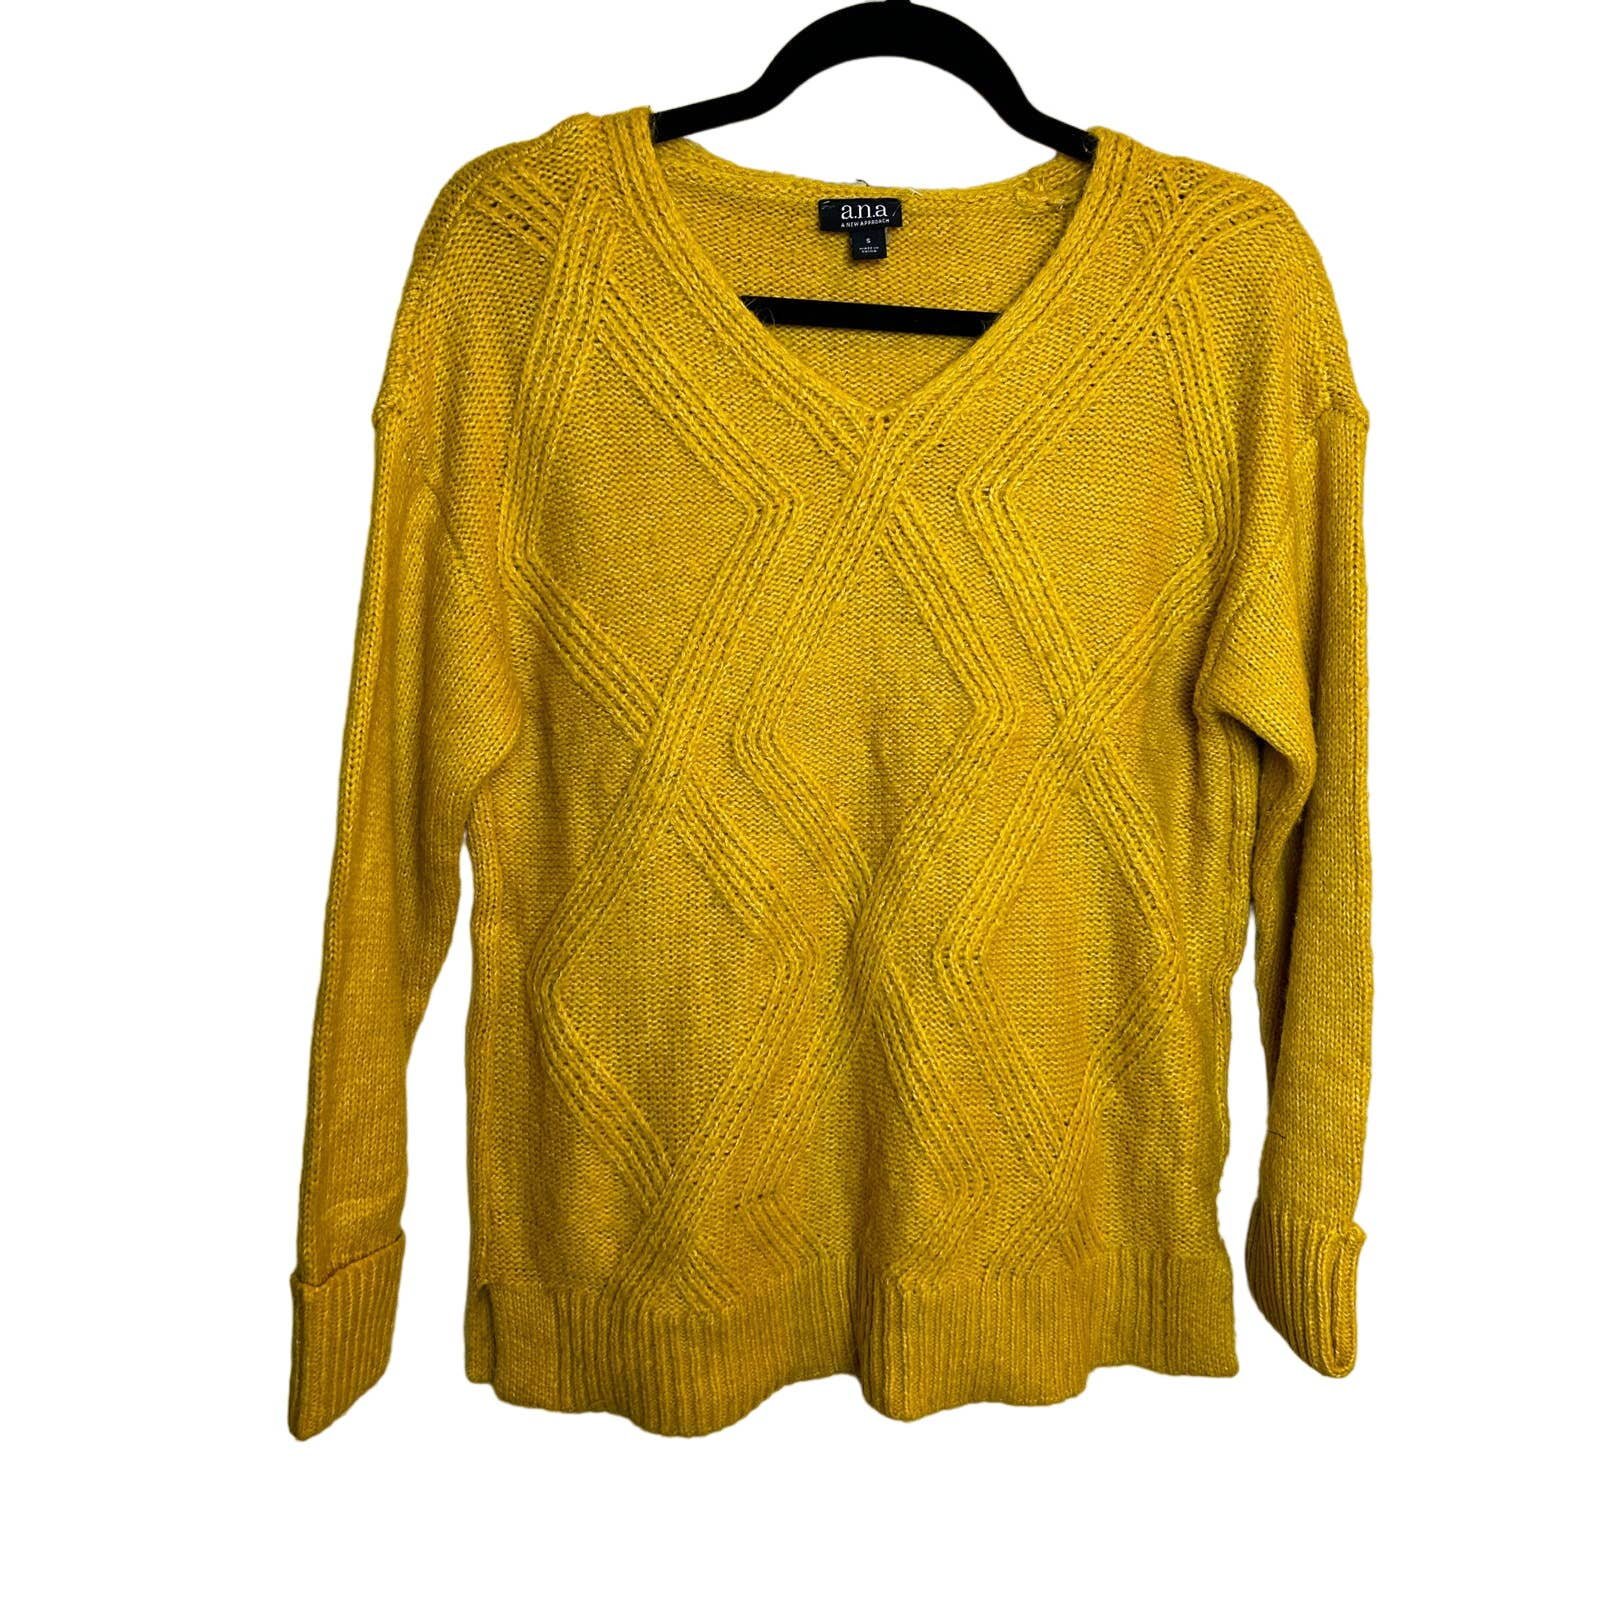 ANA Womens Yellow Mustard Sweater Size Small Knit Cotta